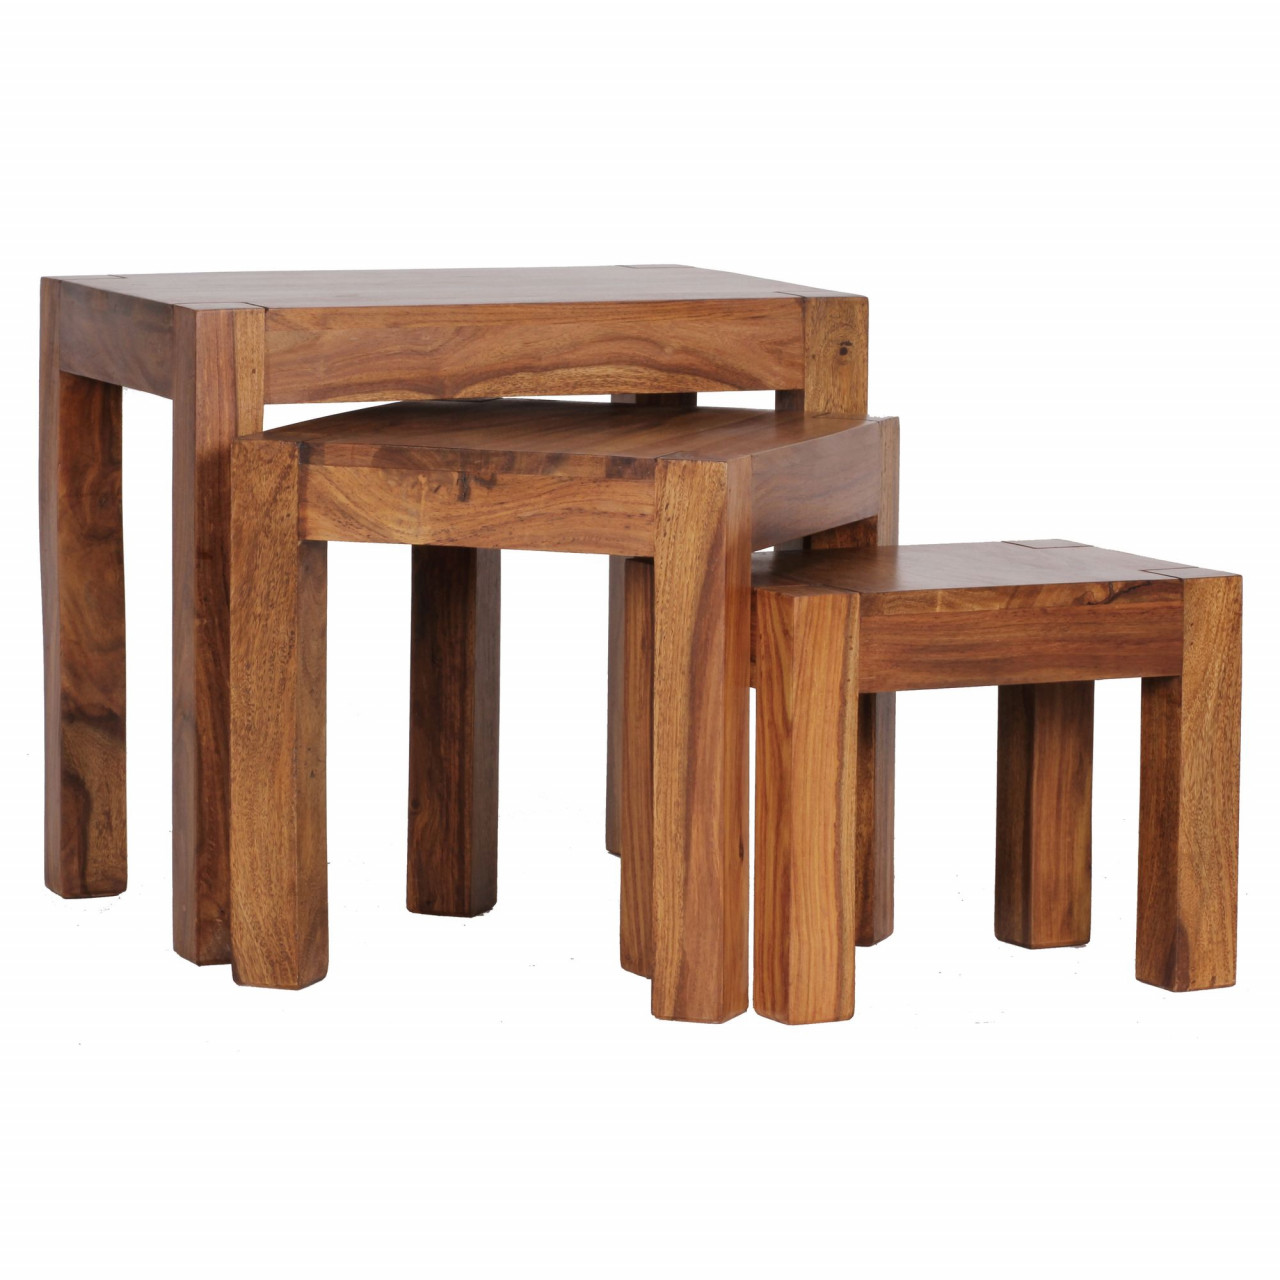 3er Set Satztisch Massiv-Holz Sheesham Wohnzimmer-Tisch Landhaus-Stil Beistelltisch dunkel-braun Naturholz von Wohnling